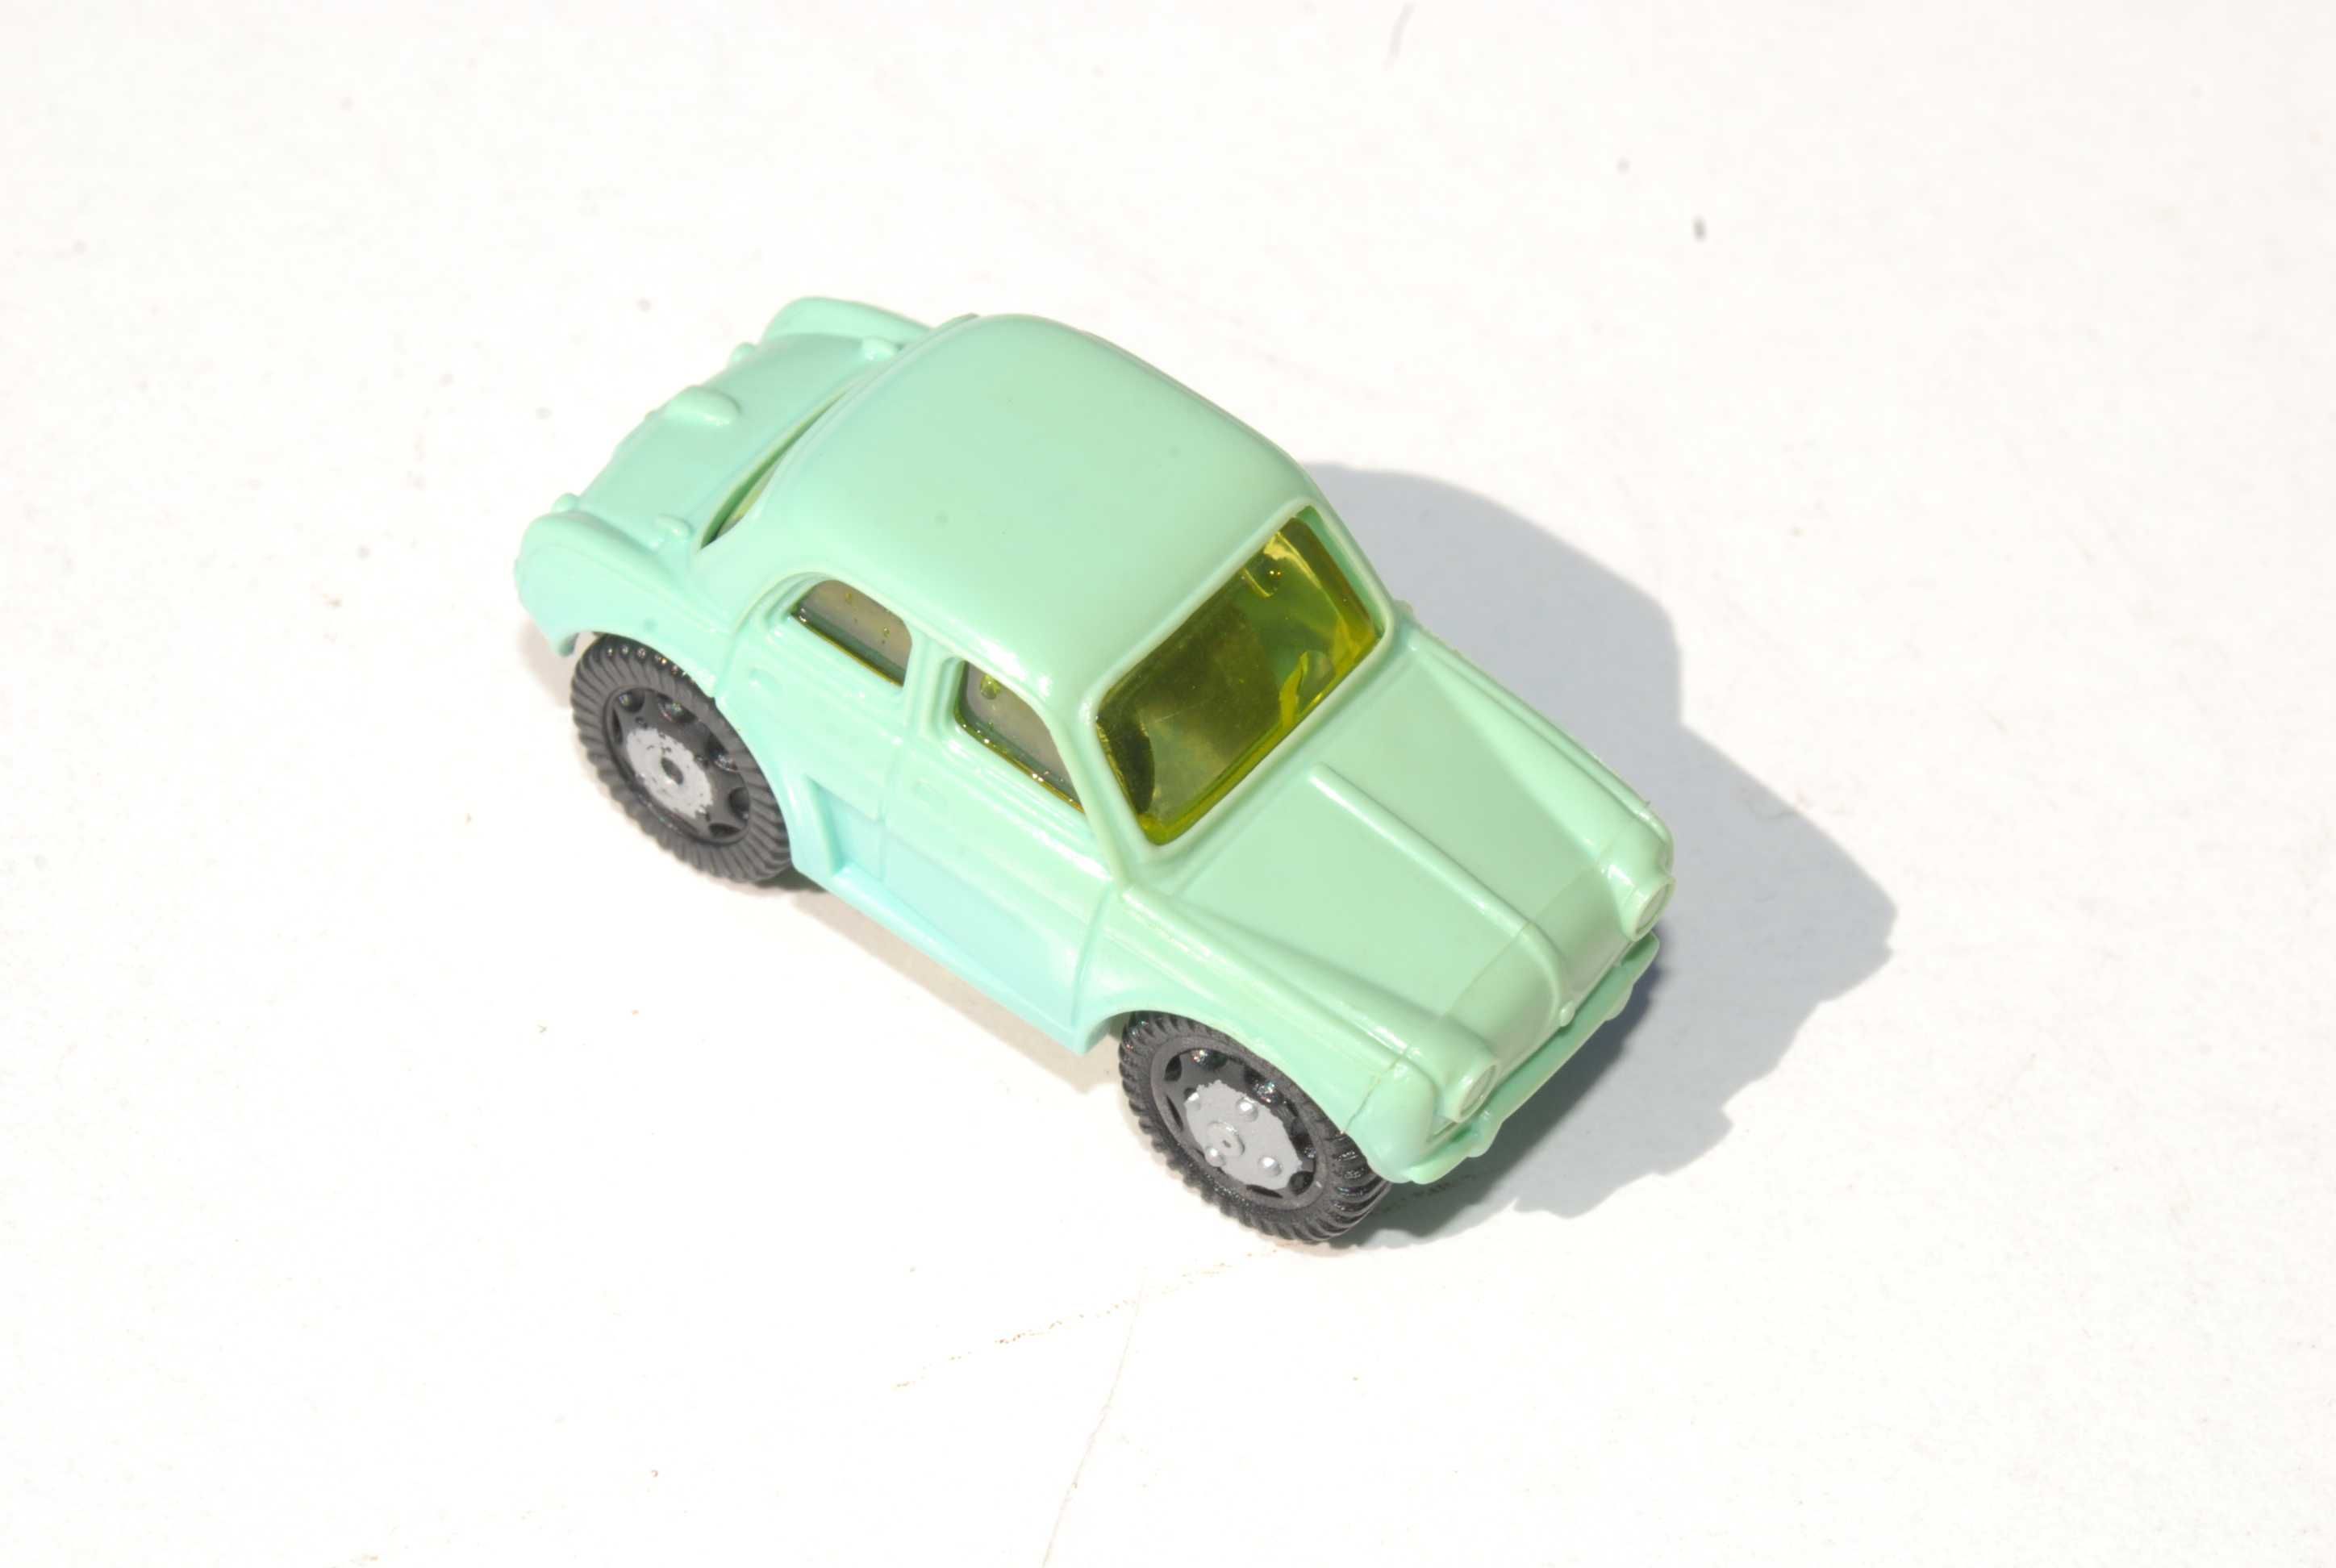 Stara zabawka samochód Renault Dauphine miniaturowy odlewany 90 lata